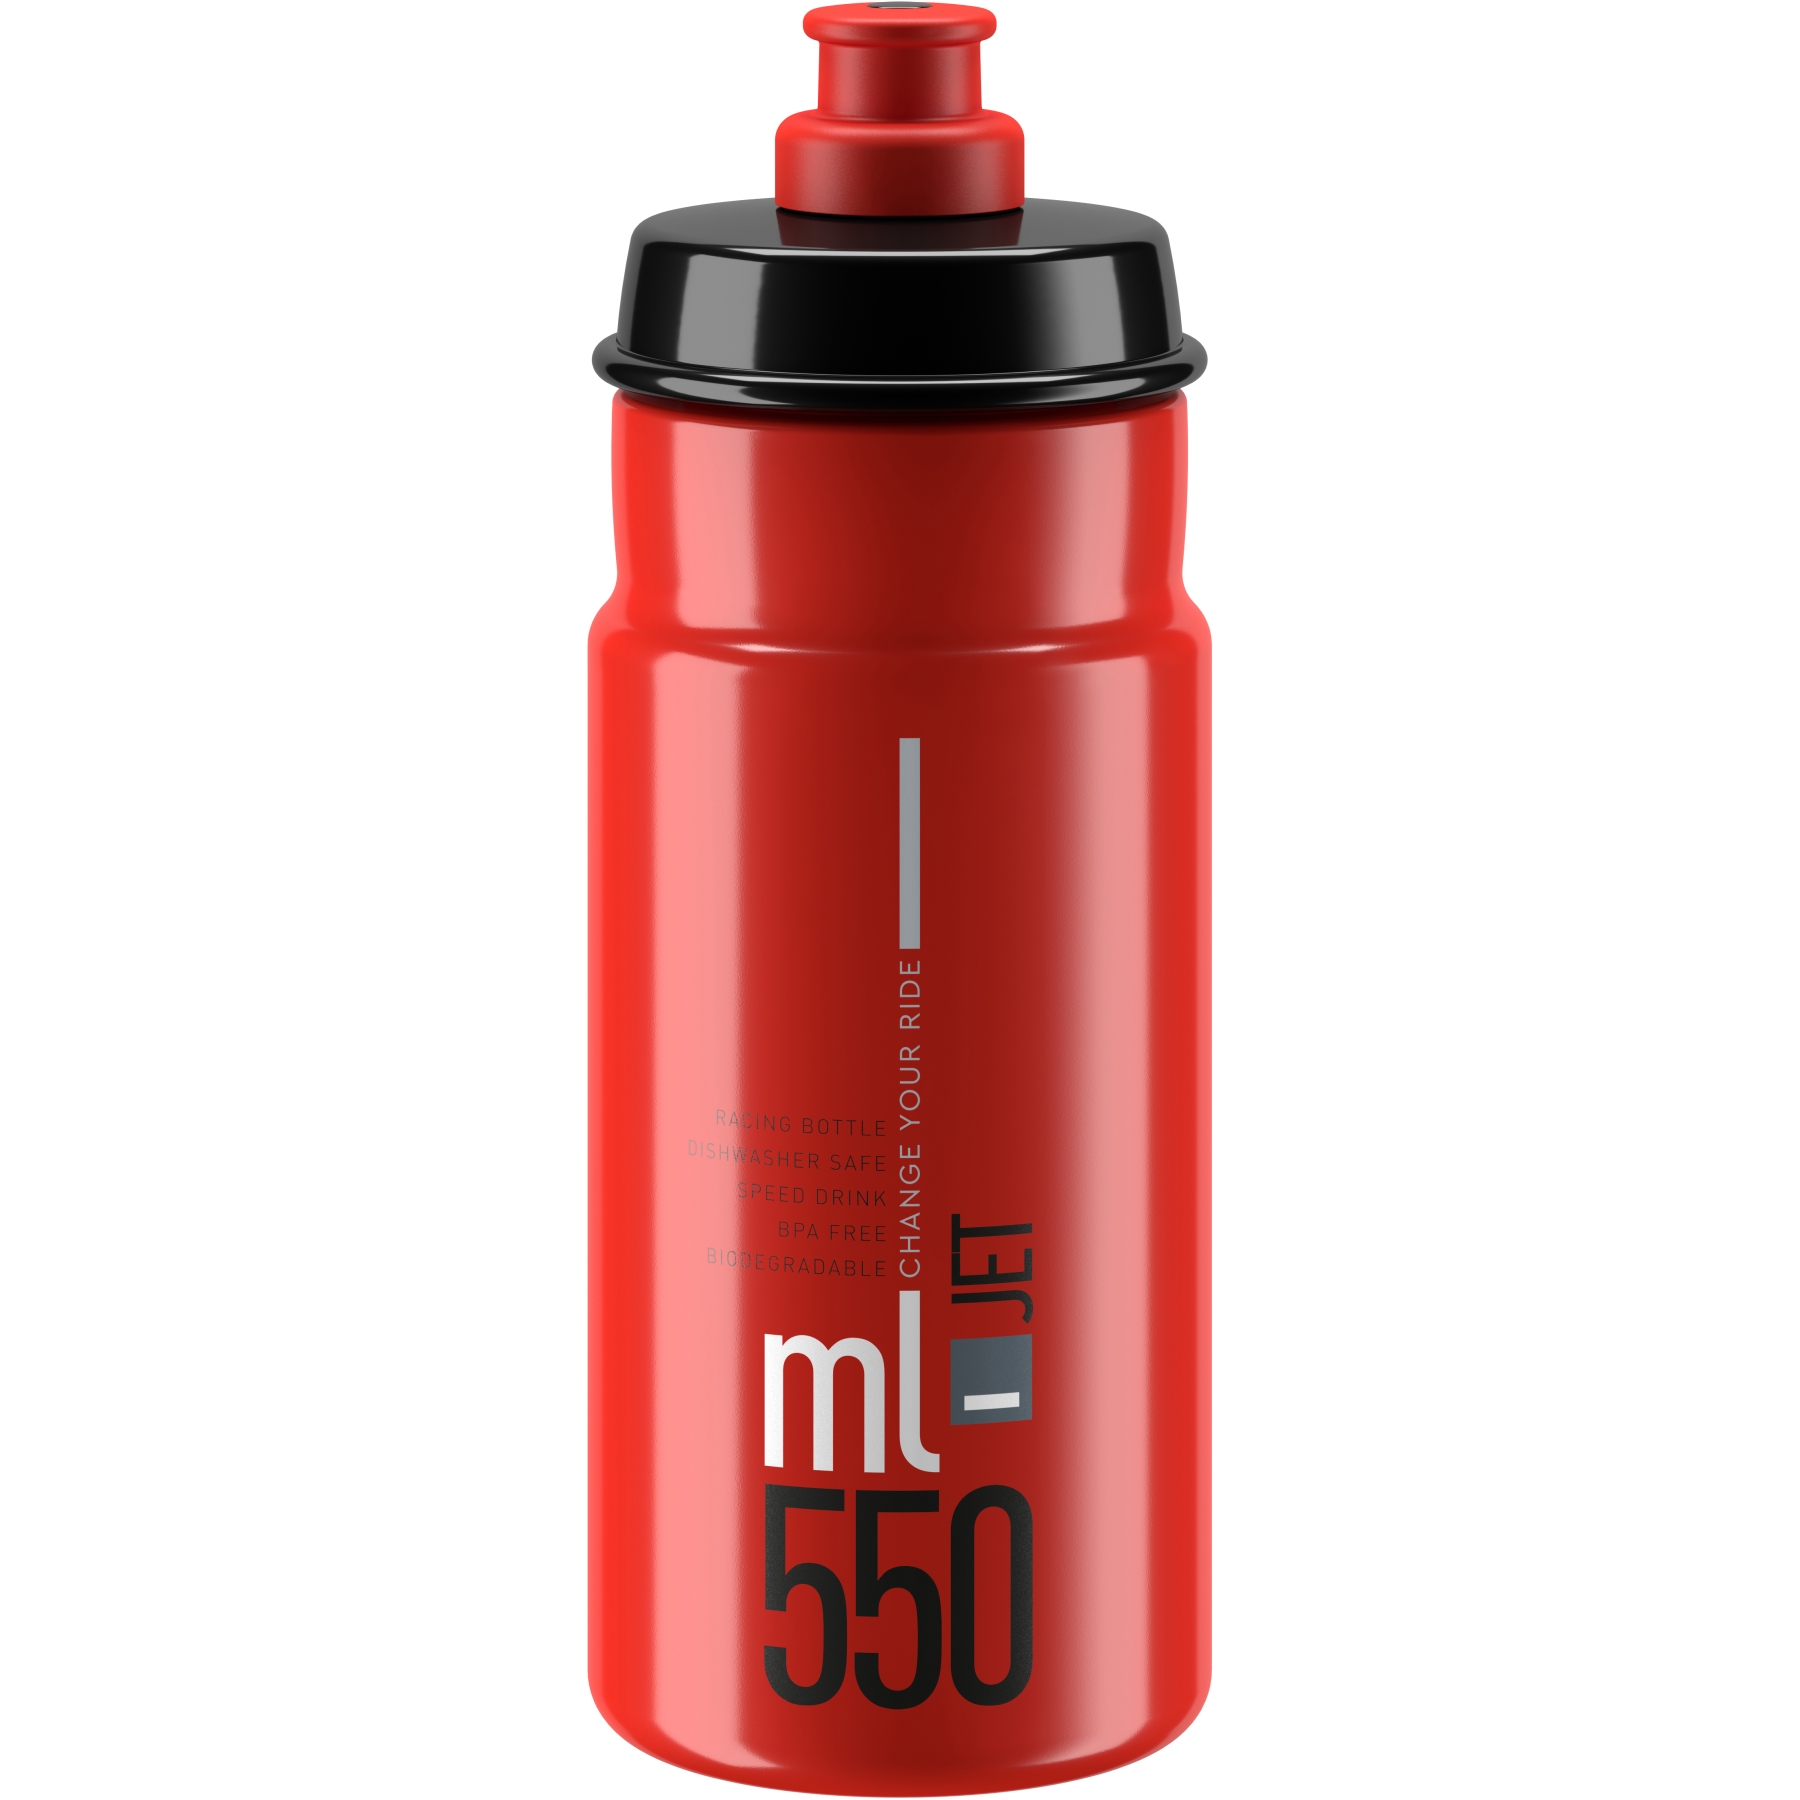 Produktbild von Elite Jet Trinkflasche 550ml - rot/grau